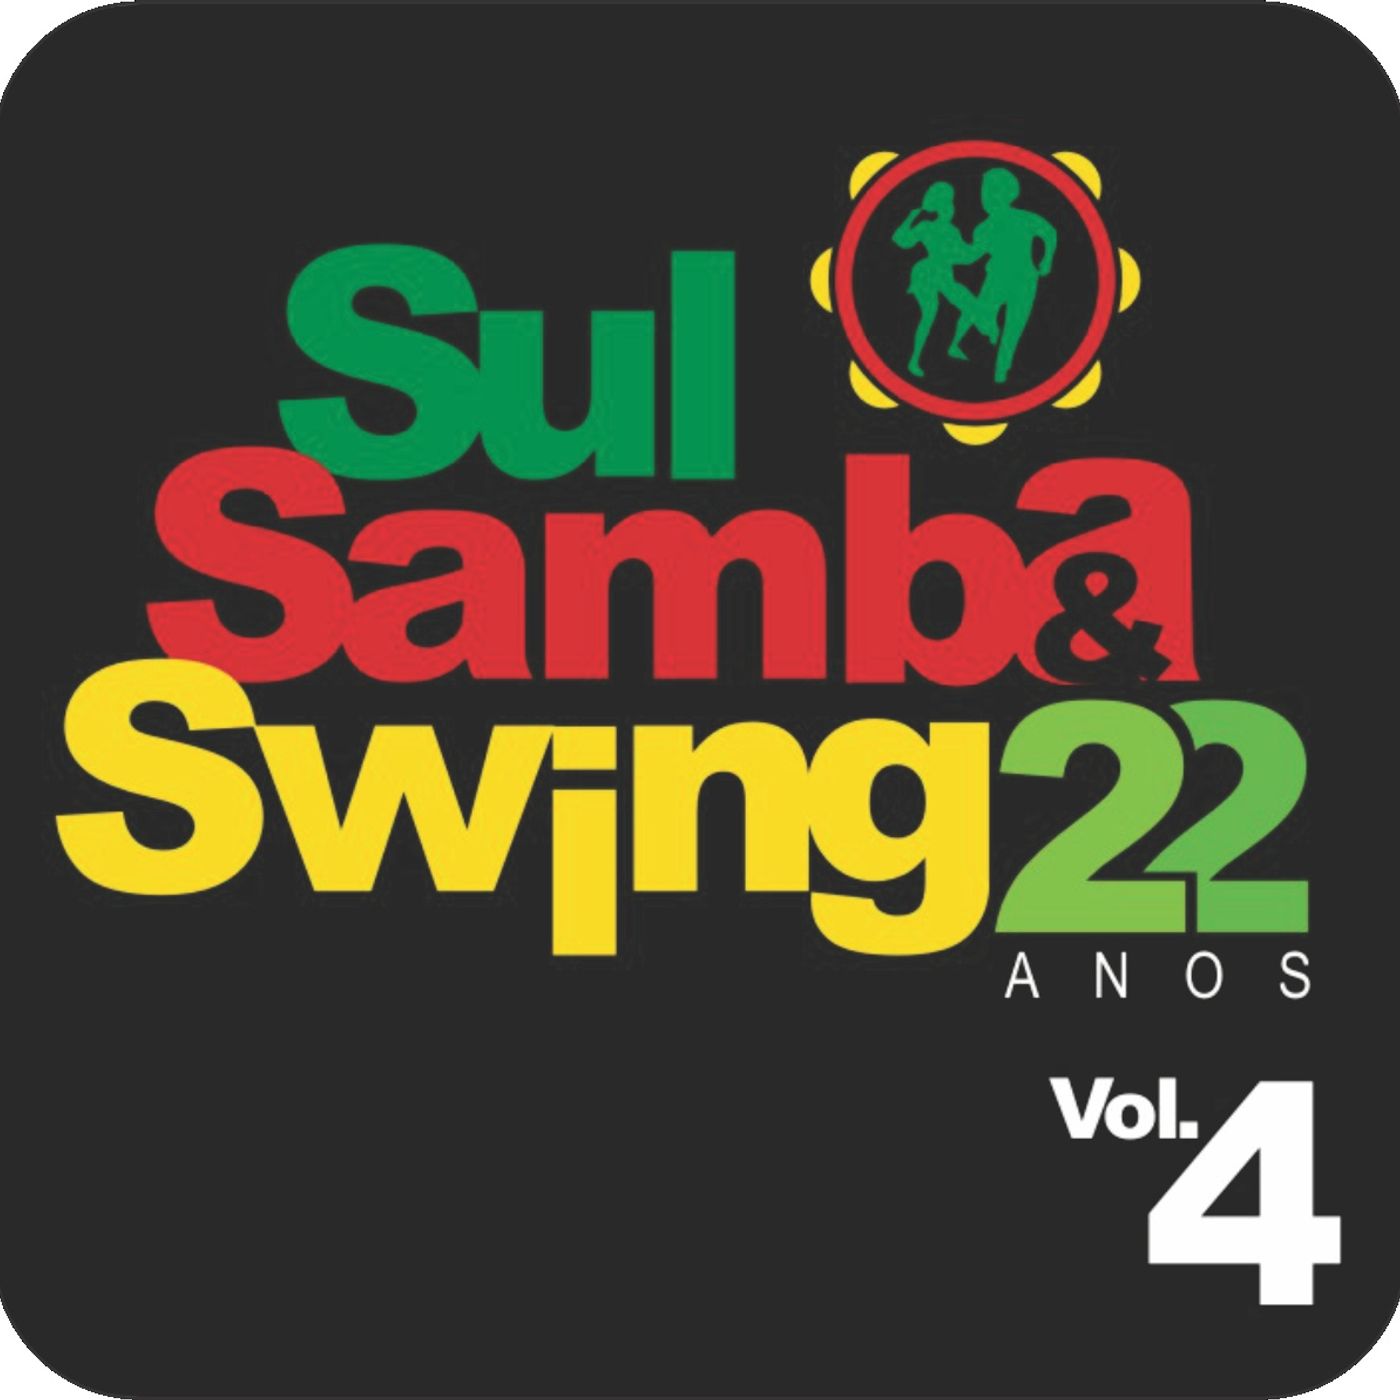 Sul Samba e Swing